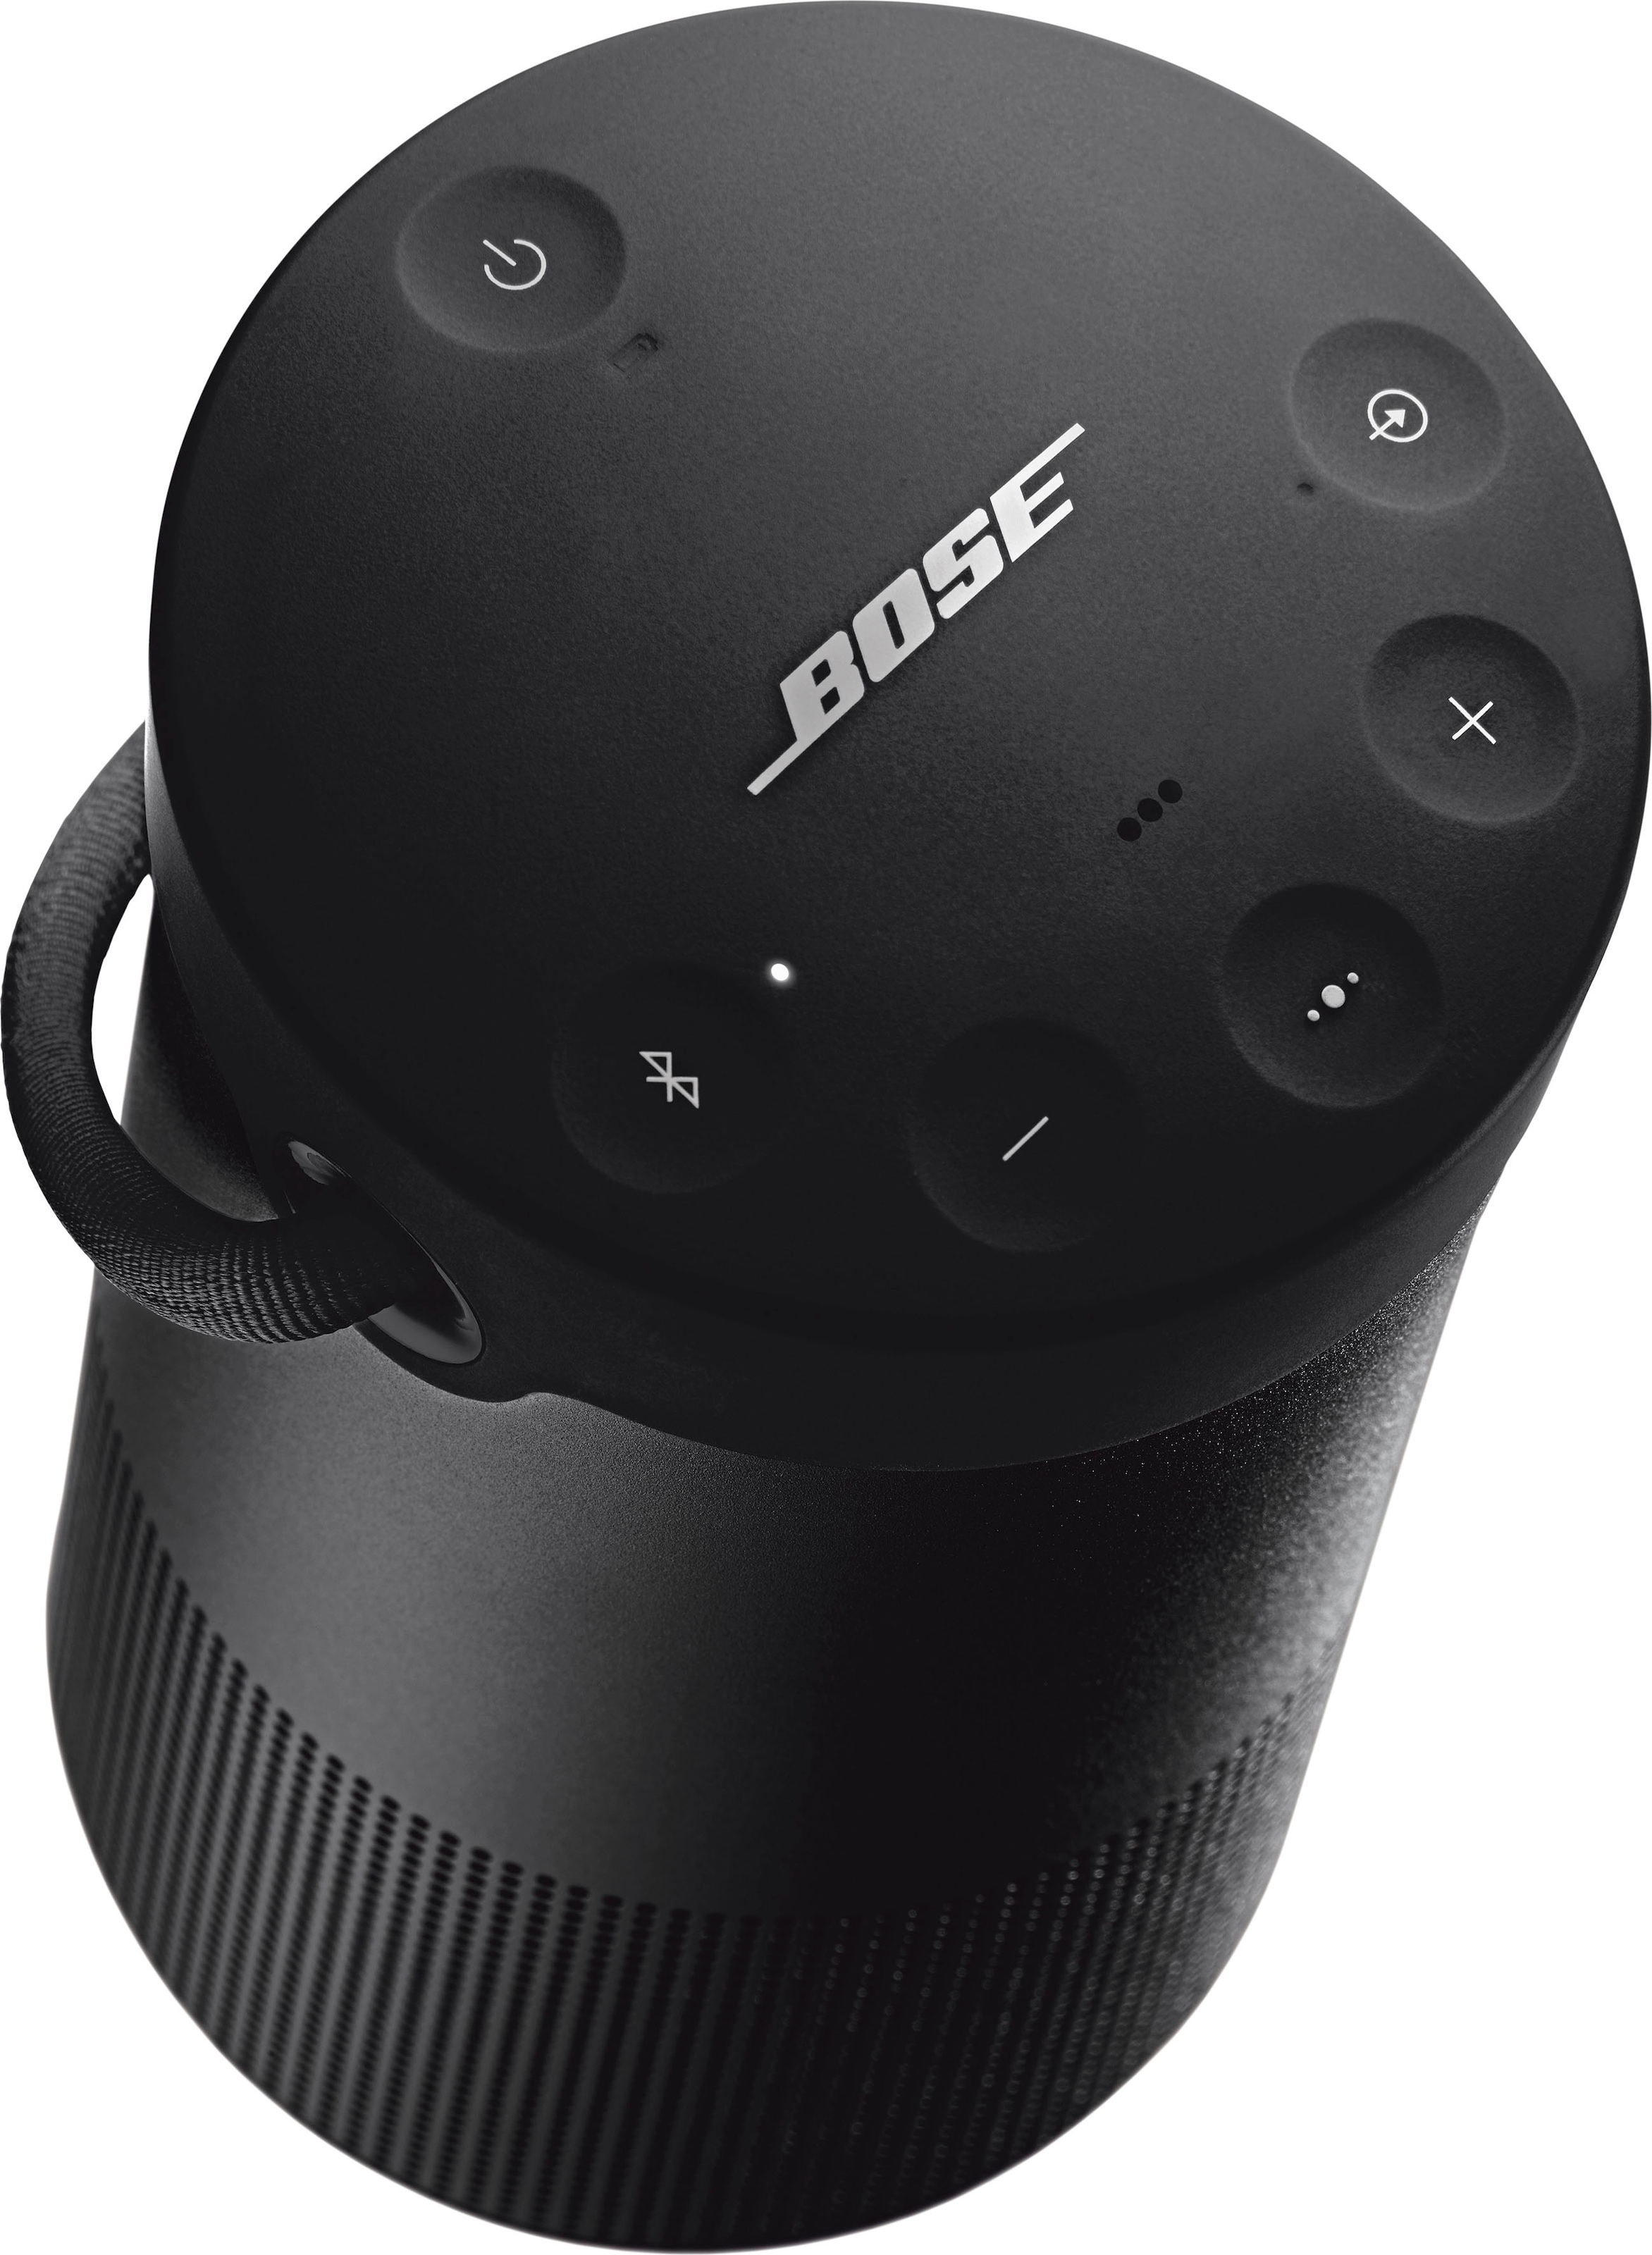 Bose Bluetooth-Lautsprecher »SoundLink Revolve+ II«, IP55 Wasserabweisend, 360°-Klang, Partymodus: Lautsprecher koppeln